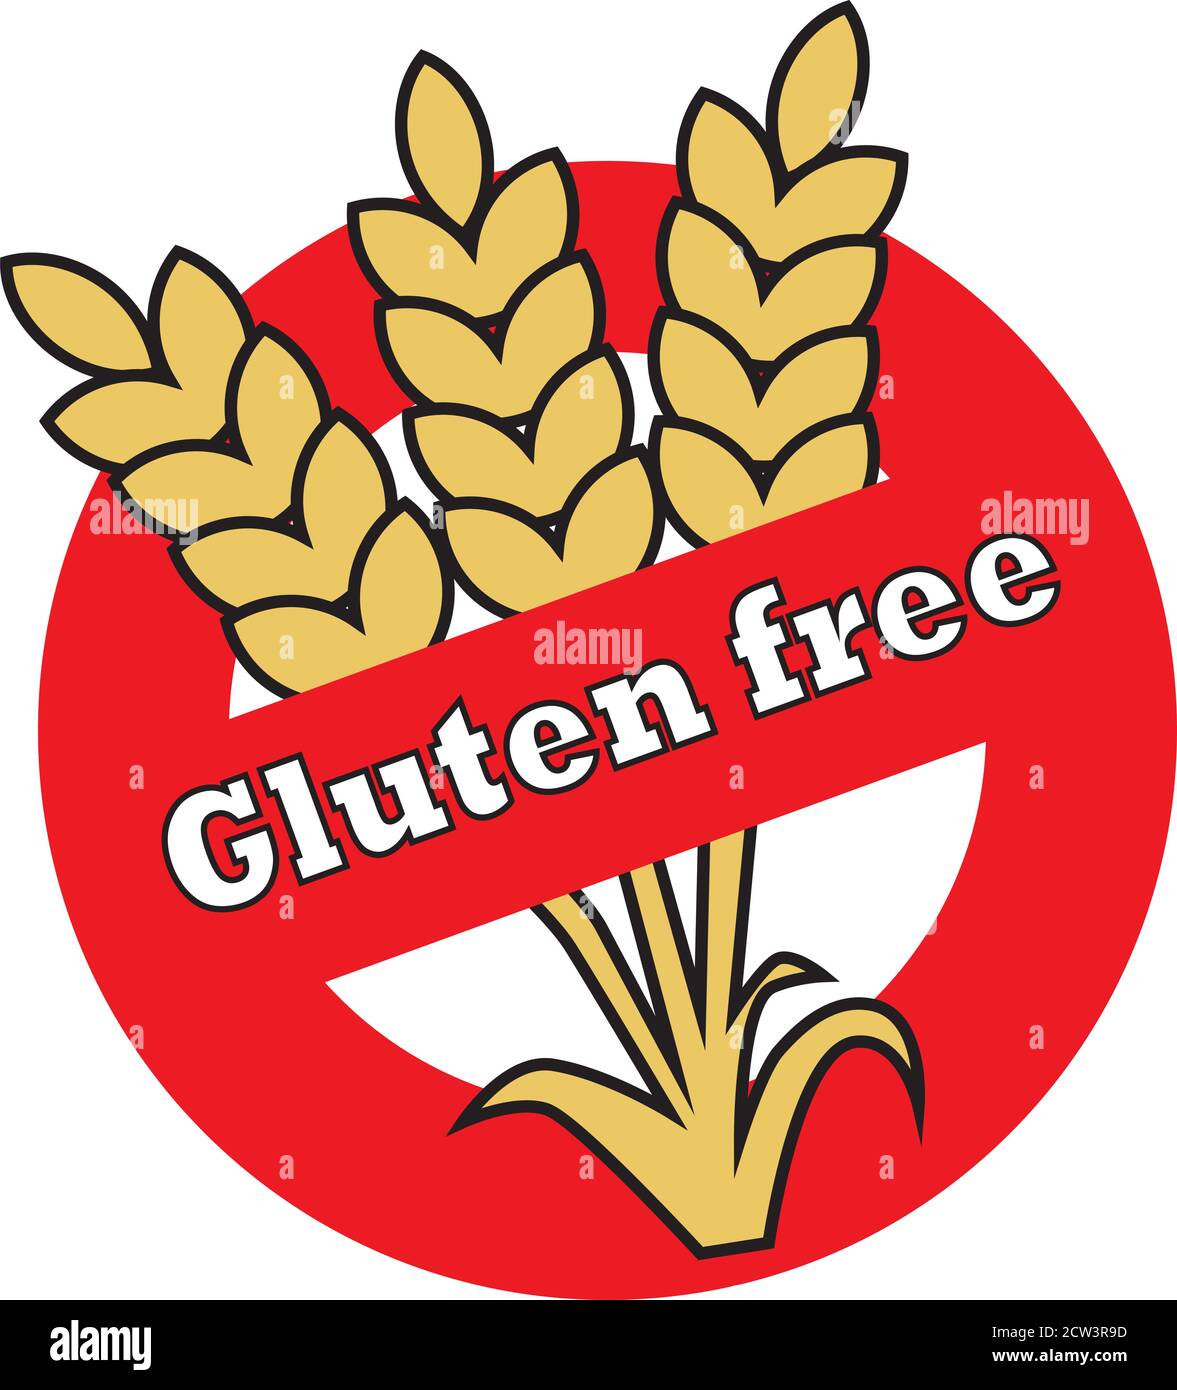 Etikett mit drei Ähren Weizen in einem roten Kreis mit dem Text glutenfrei. Stock Vektor